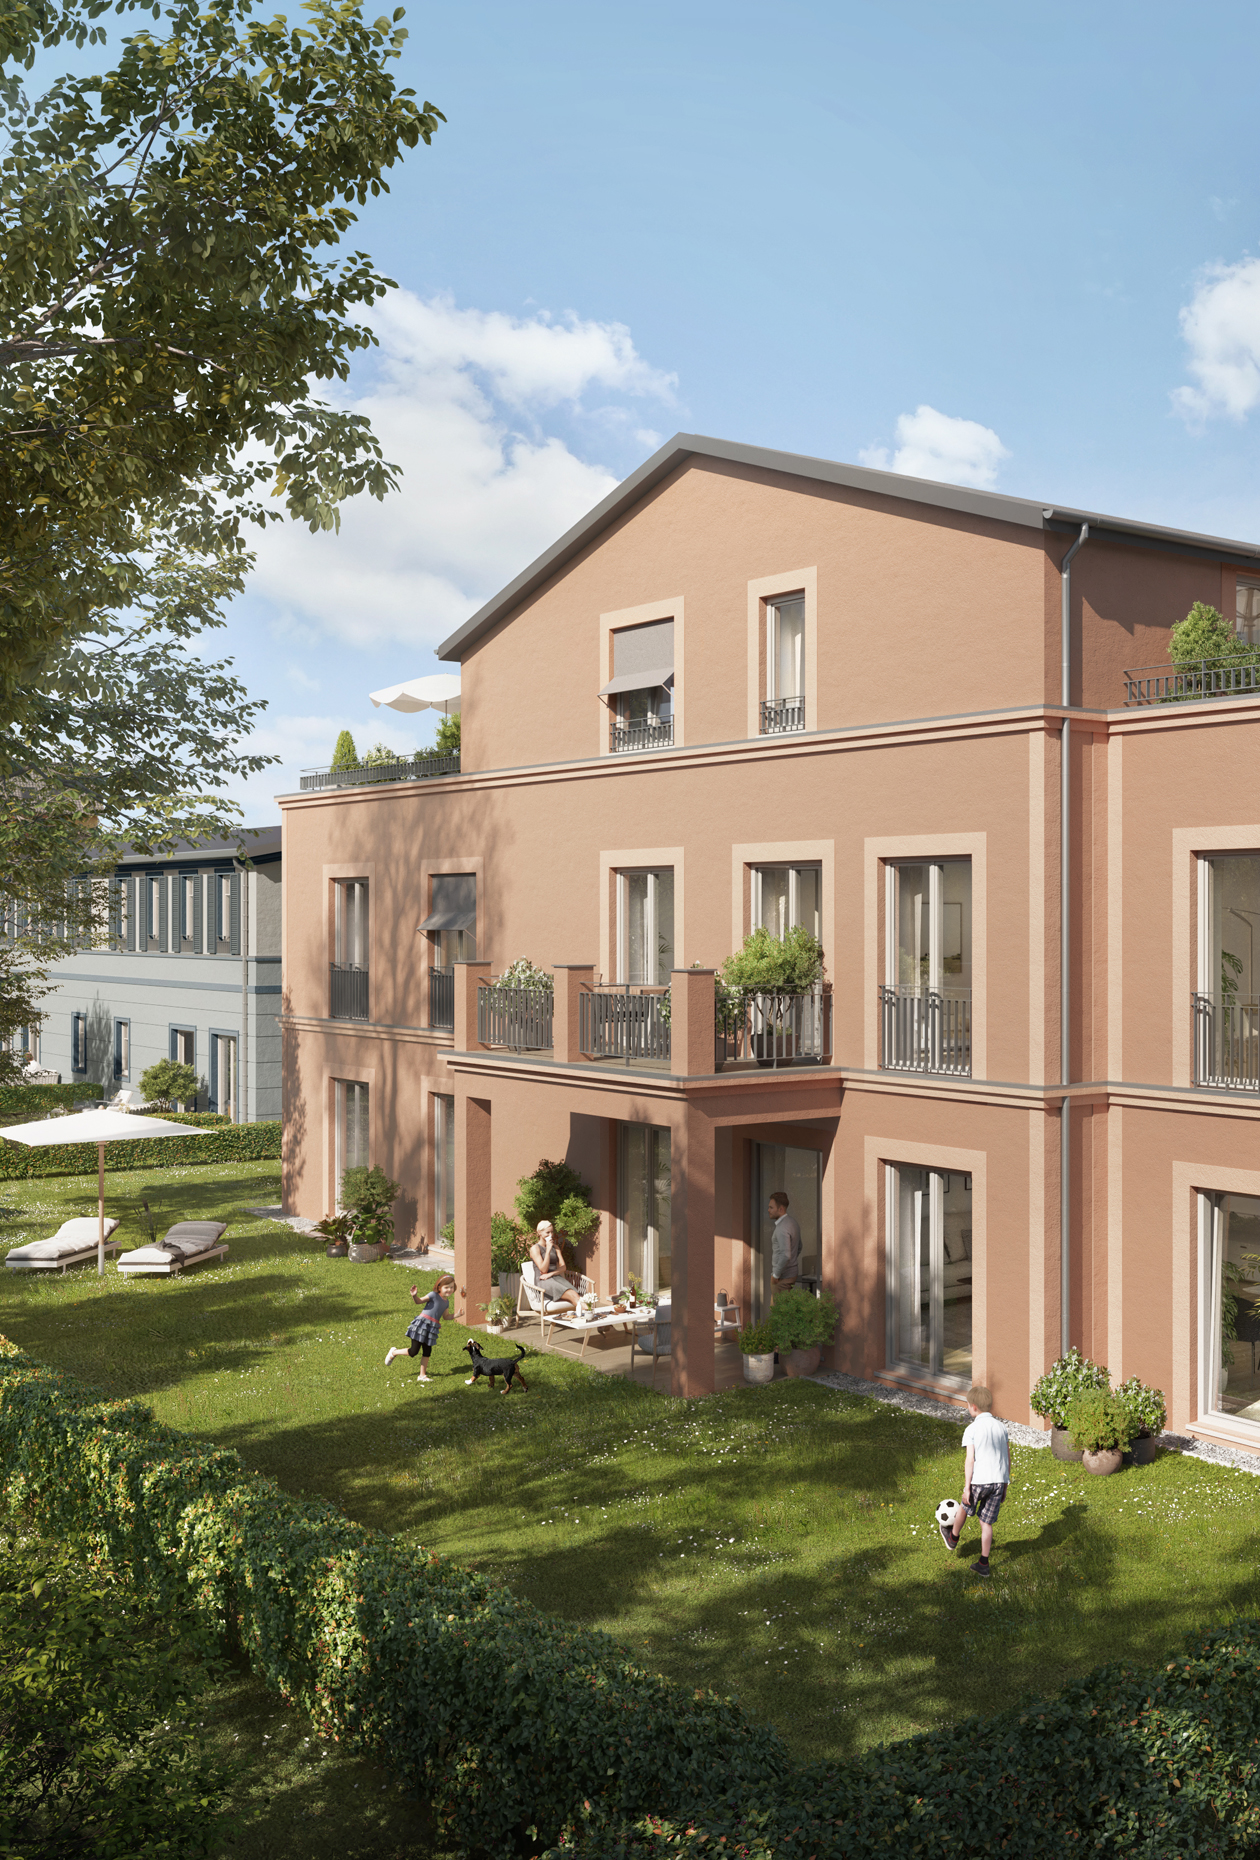 TIAMO Potsdam – Gartenhaus West Urbana mit 6 Eigentumswohnungen in Bauabschnitt 2